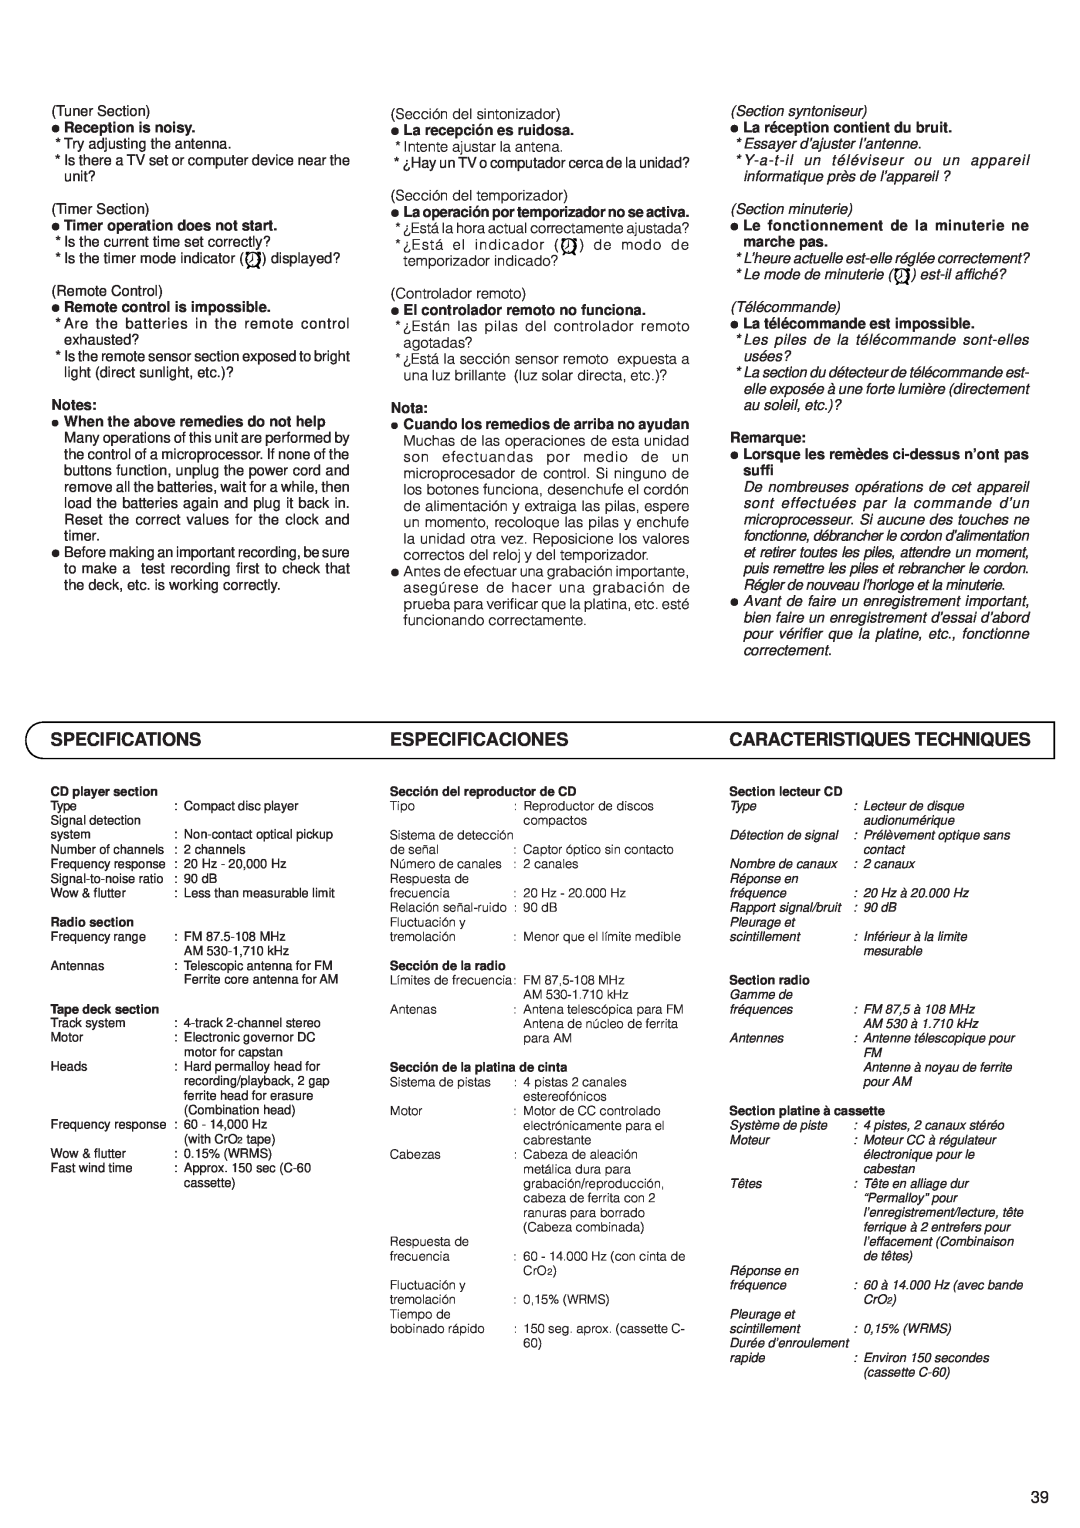 JVC RV-B99 manual Specifications, Especificaciones, Caracteristiques Techniques 